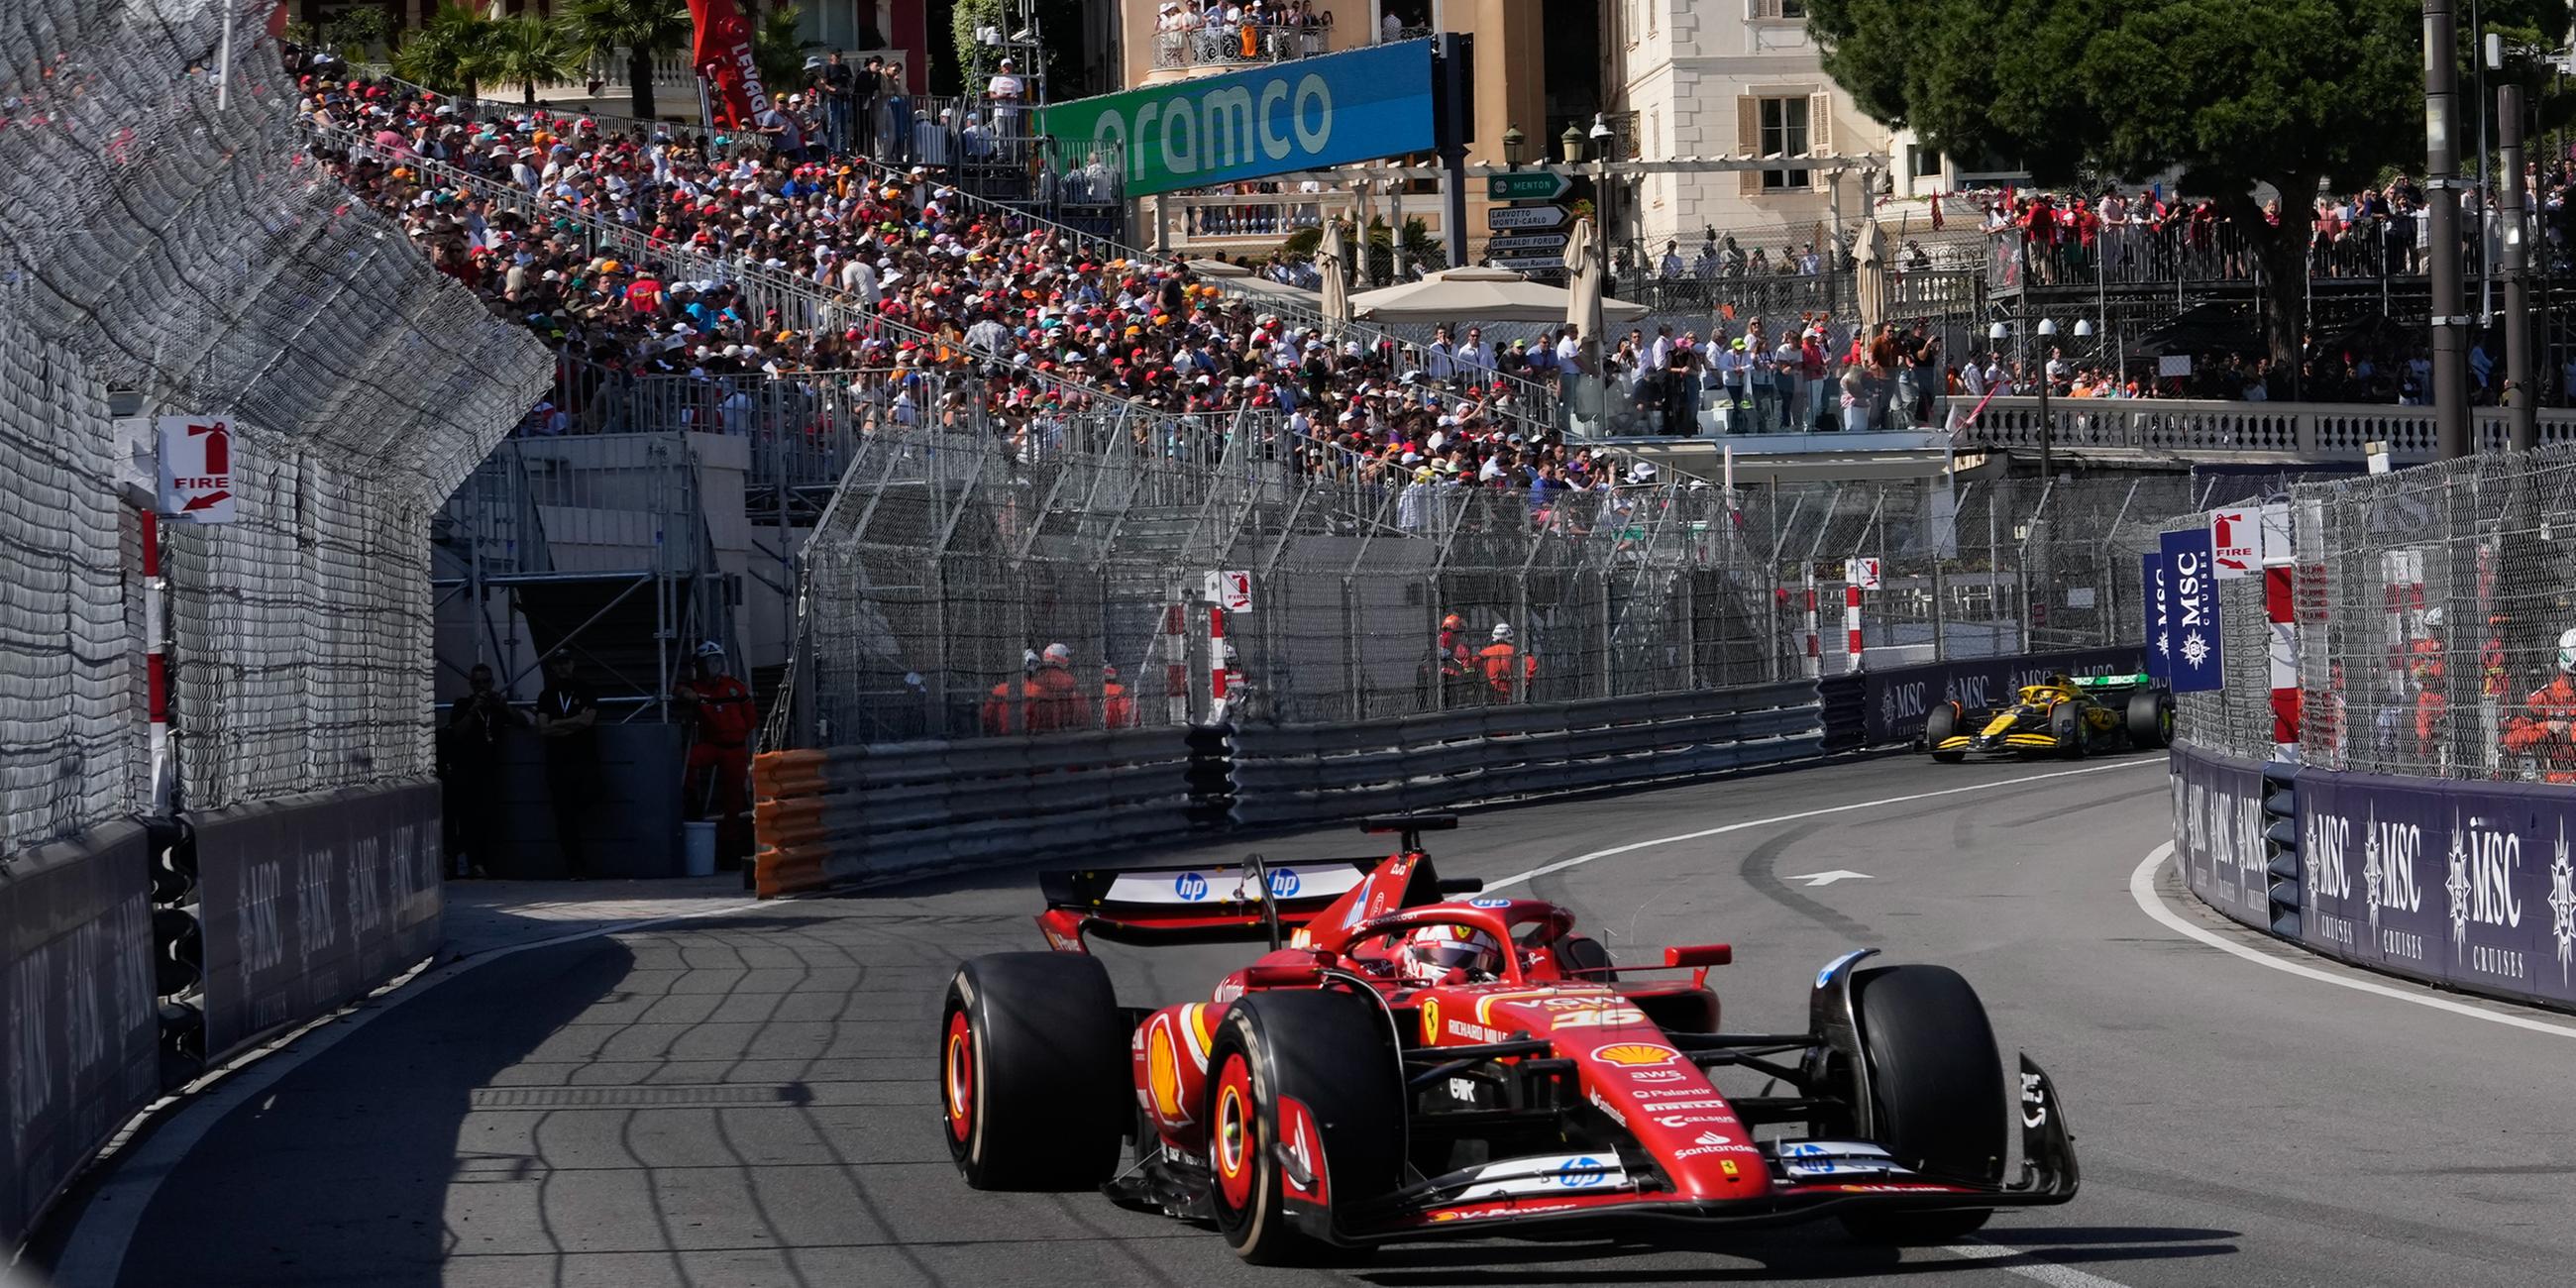 Ferrari-Pilot Charles Leclerc aus Monaco steuert sein Auto während des Formel-1-Rennens zum Großen Preis von Monaco auf der Rennstrecke in Monaco.